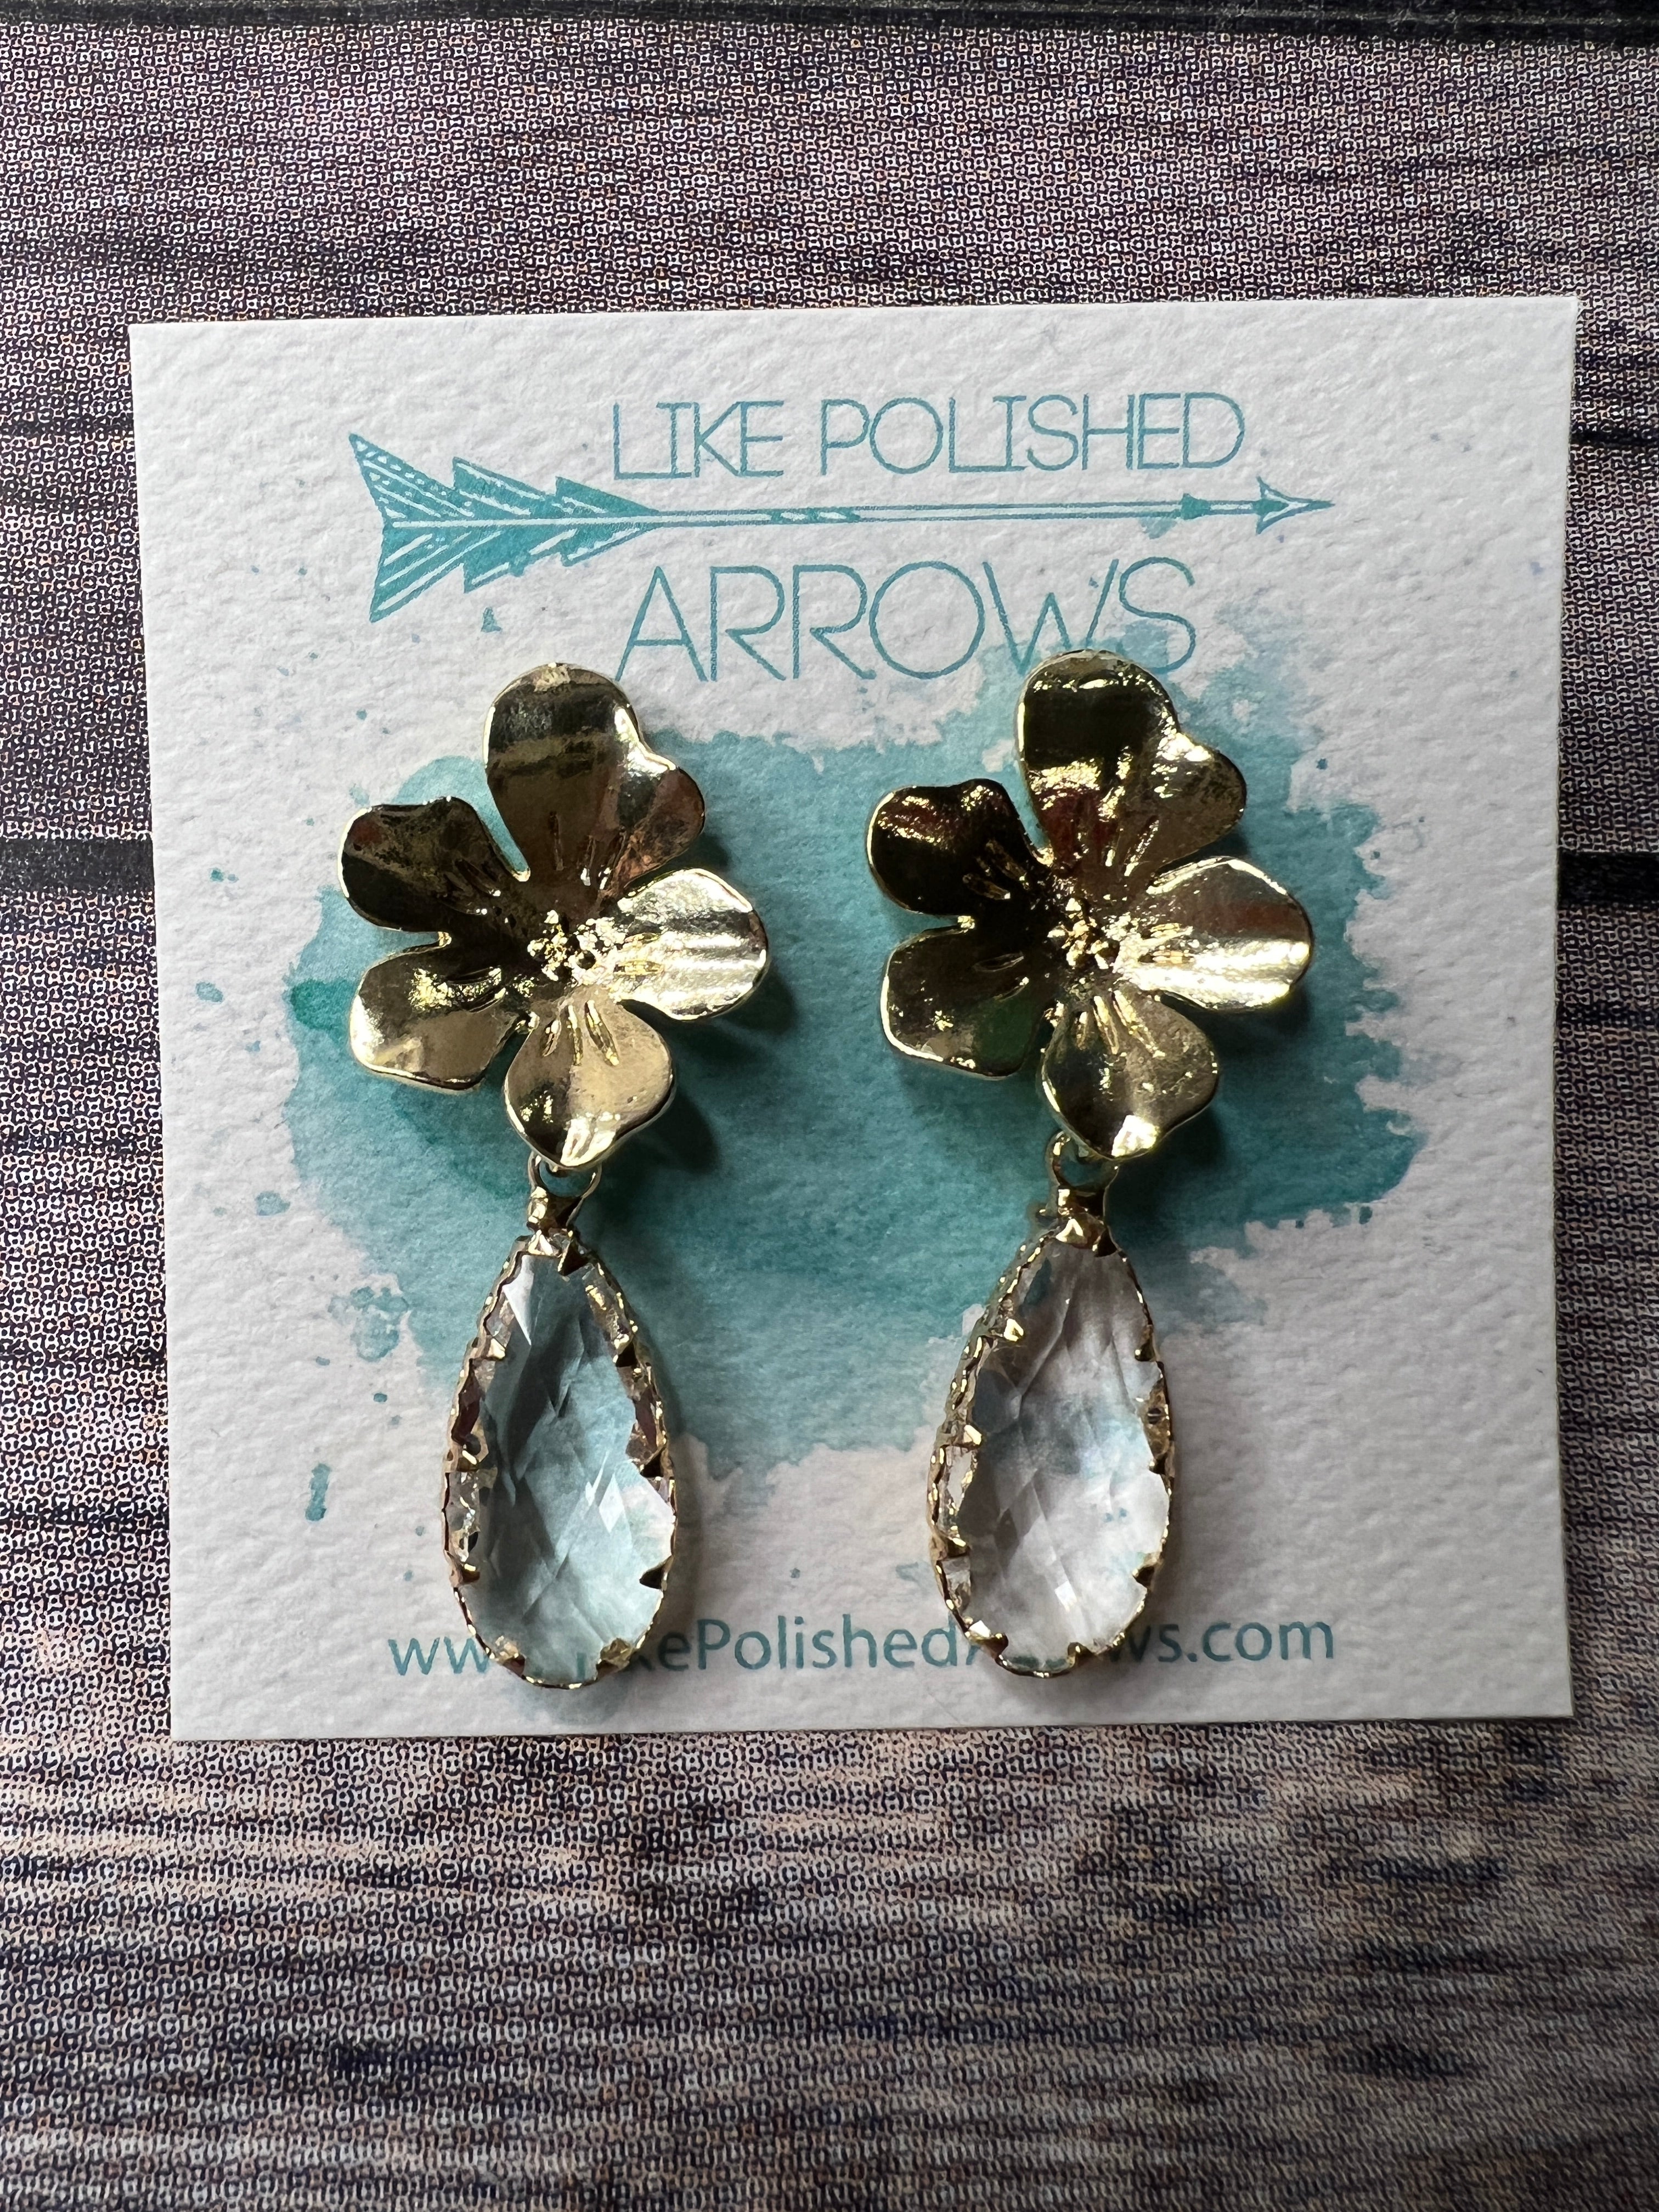 Flower Glass Pendant Teardrop Necklace and Earrings